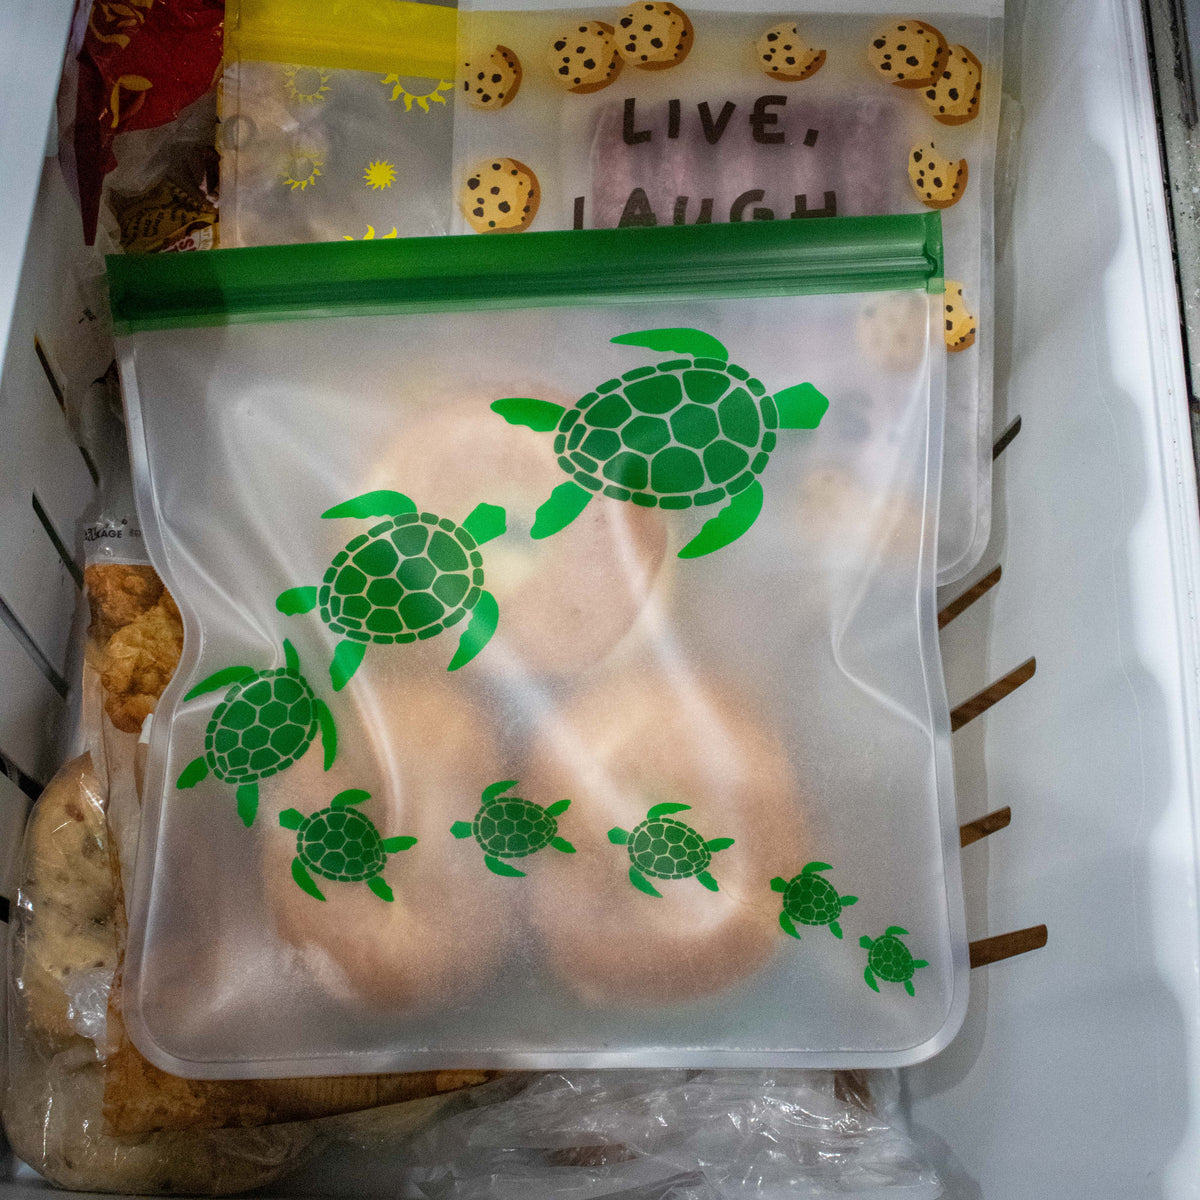 Ziparoos Reusable Gallon Freezer Bag Set of 2 - Save The Bees